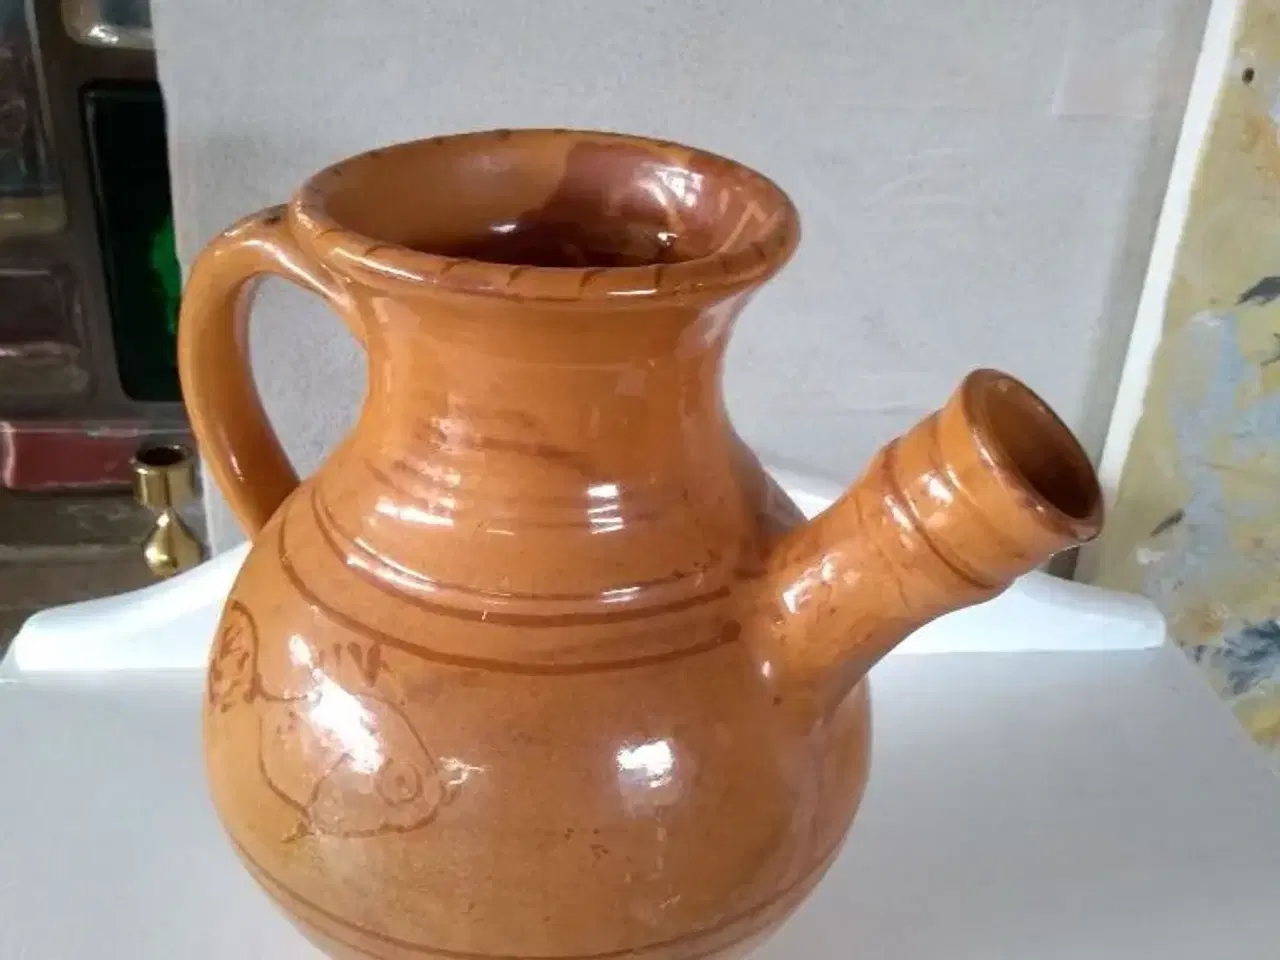 Billede 2 - Vand eller vin kande i keramik